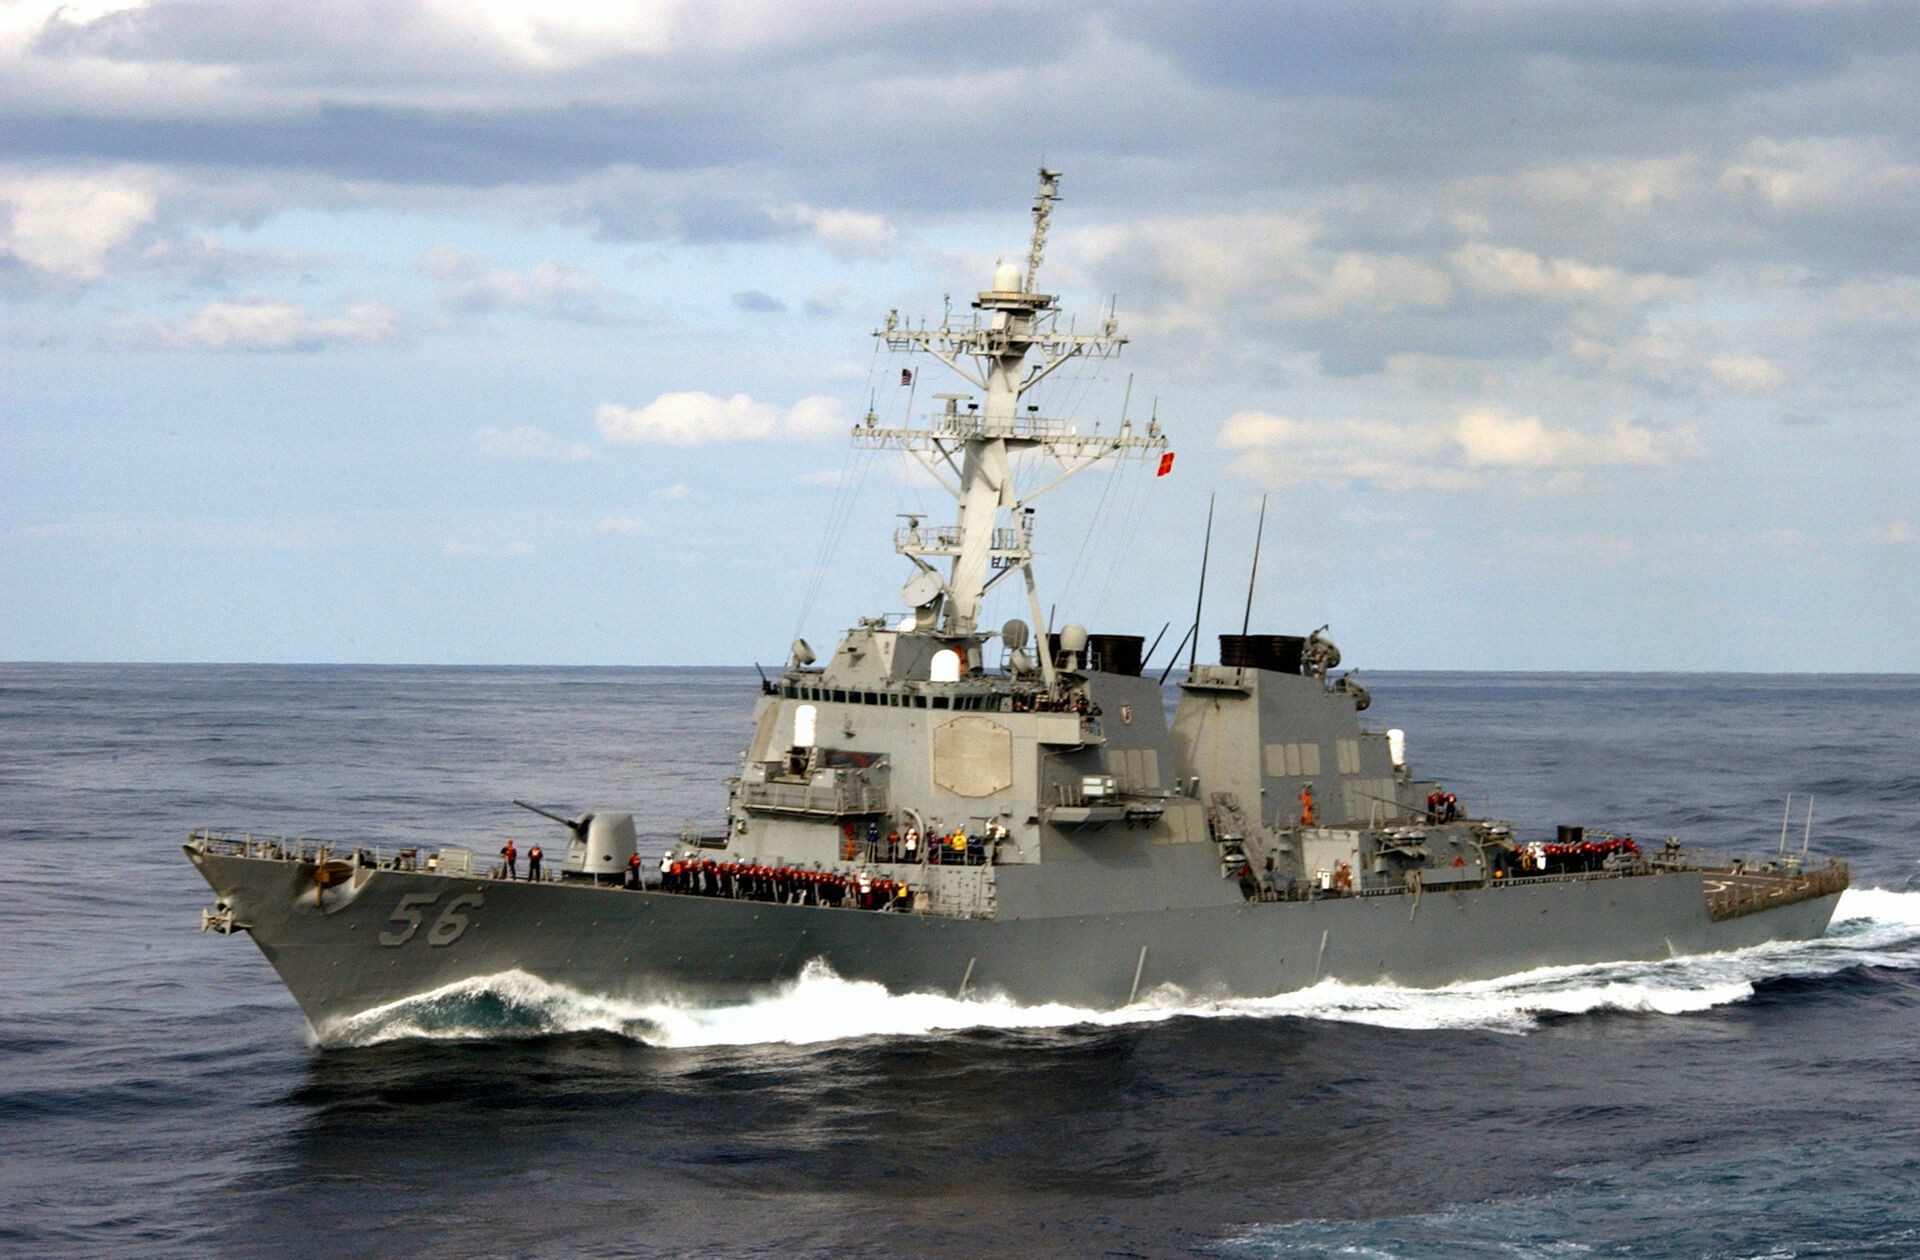 American destroyer John McCain invaded Russian waters near Vladivostok